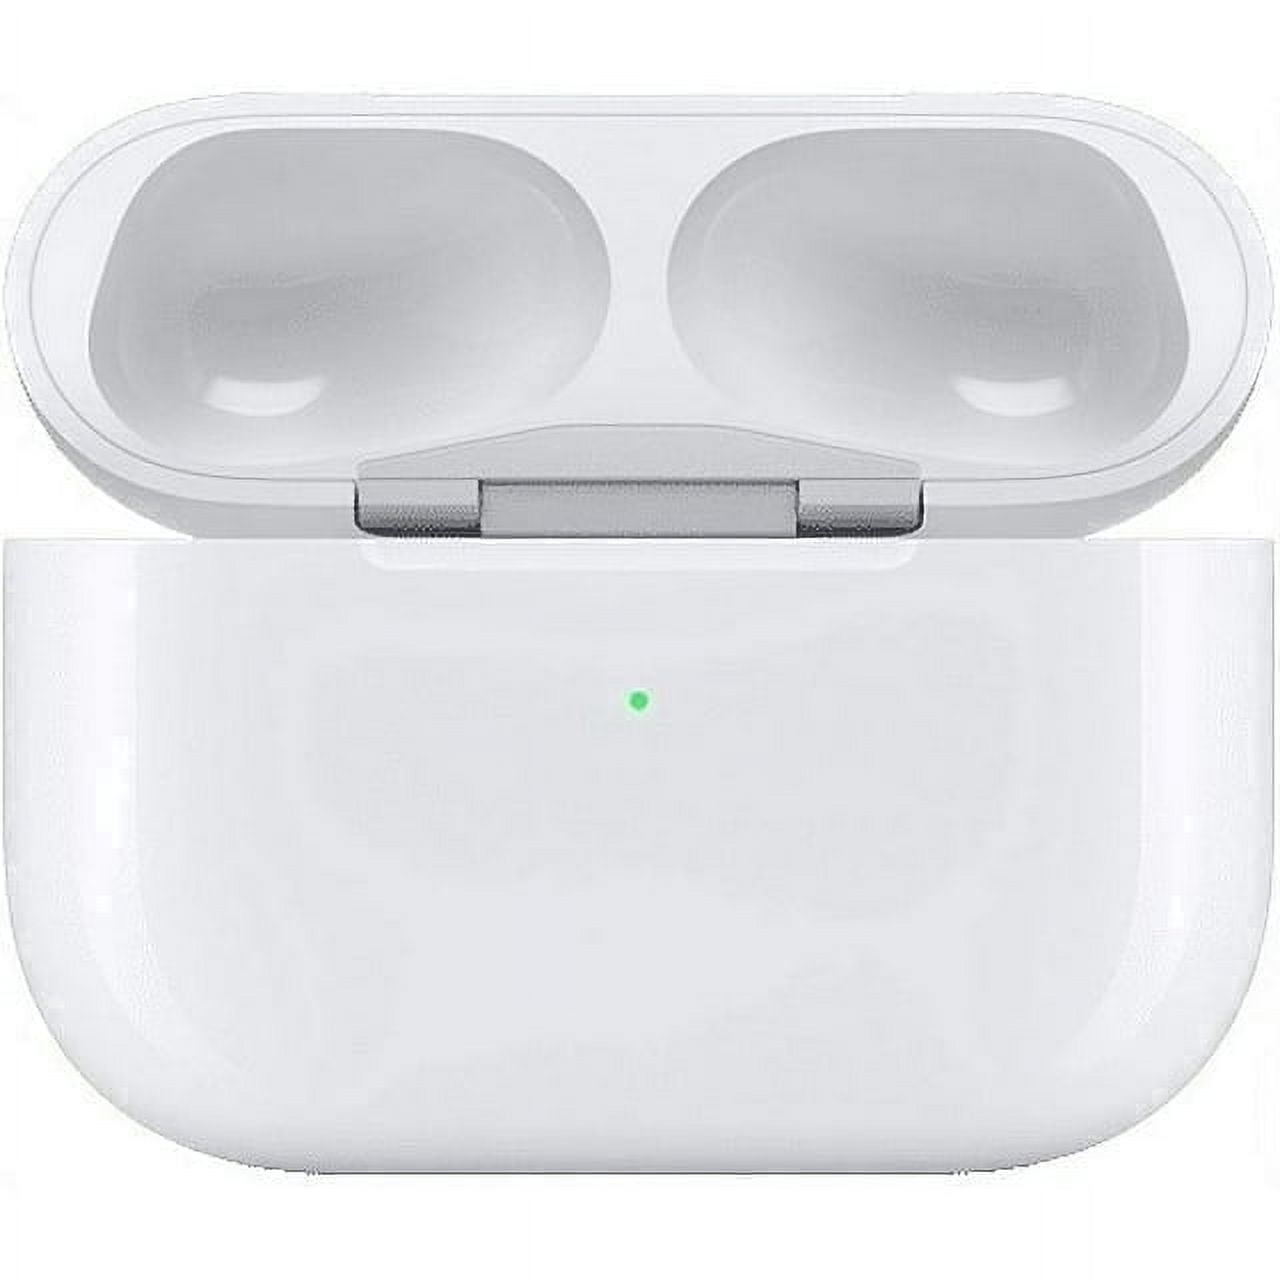 Apple AirPods 1. Gen, blanc, 114 €